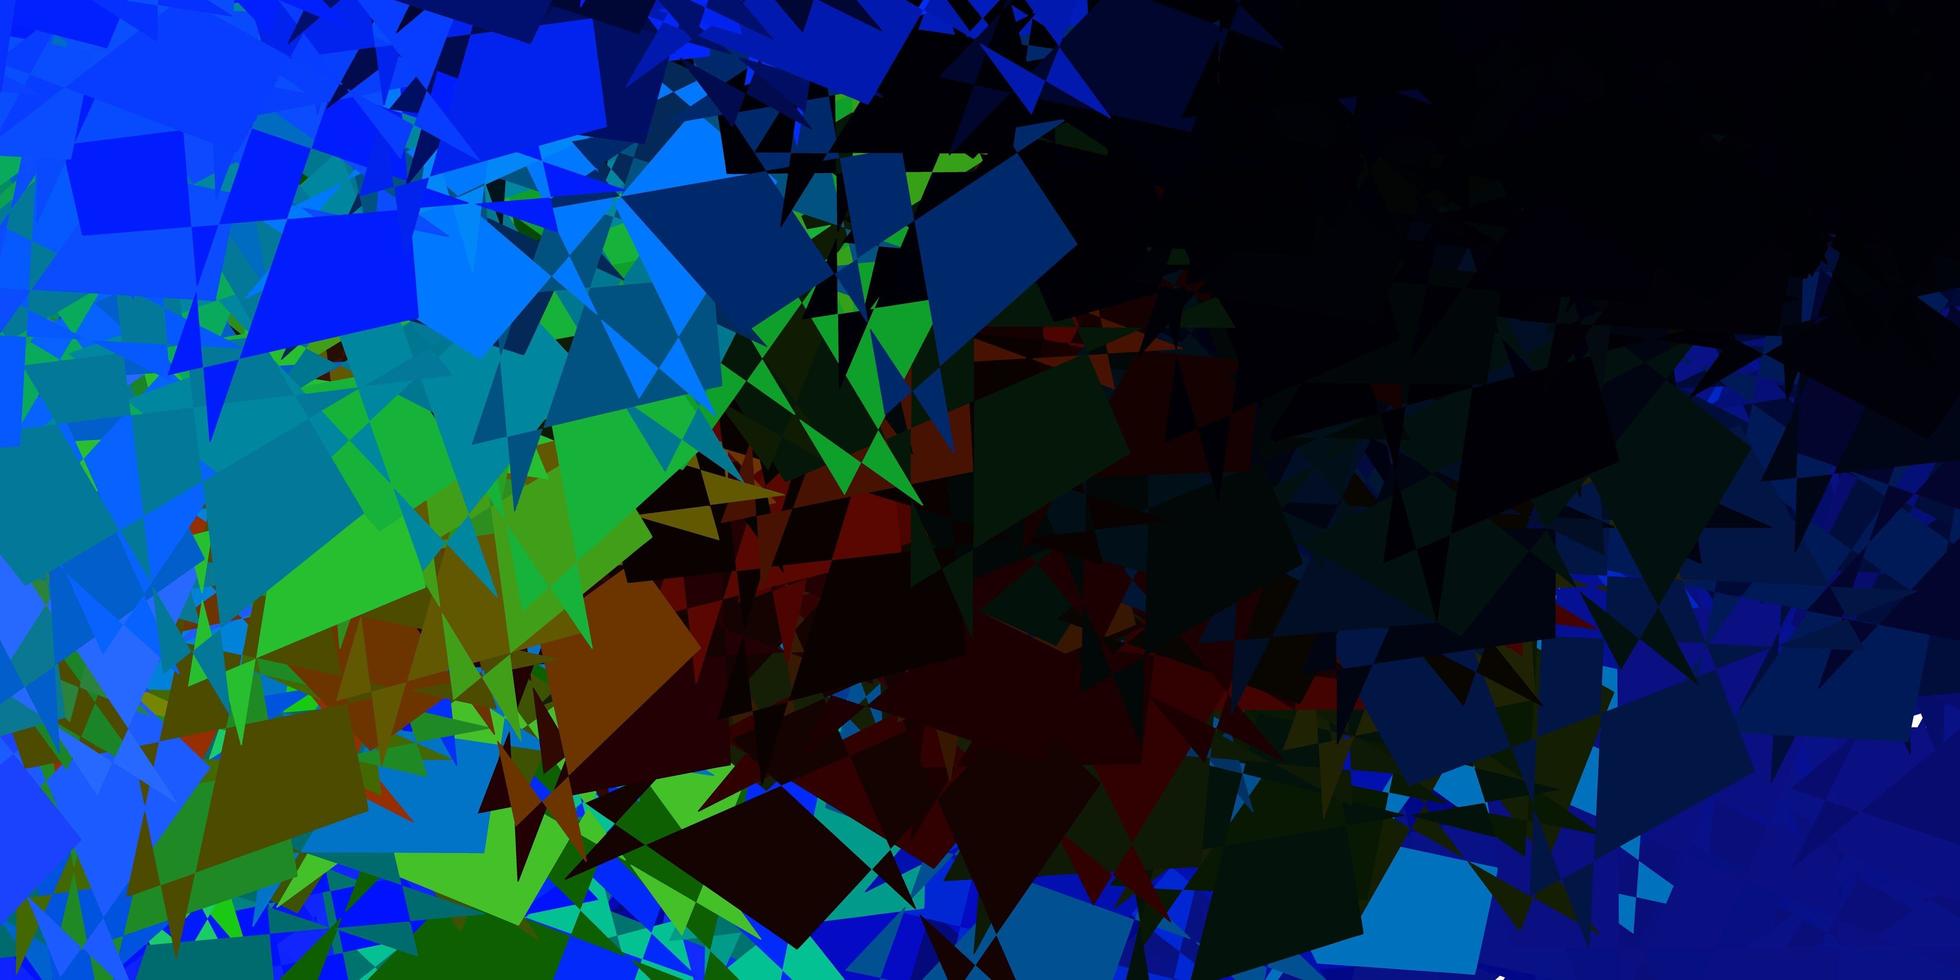 sfondo vettoriale multicolore scuro con forme caotiche.